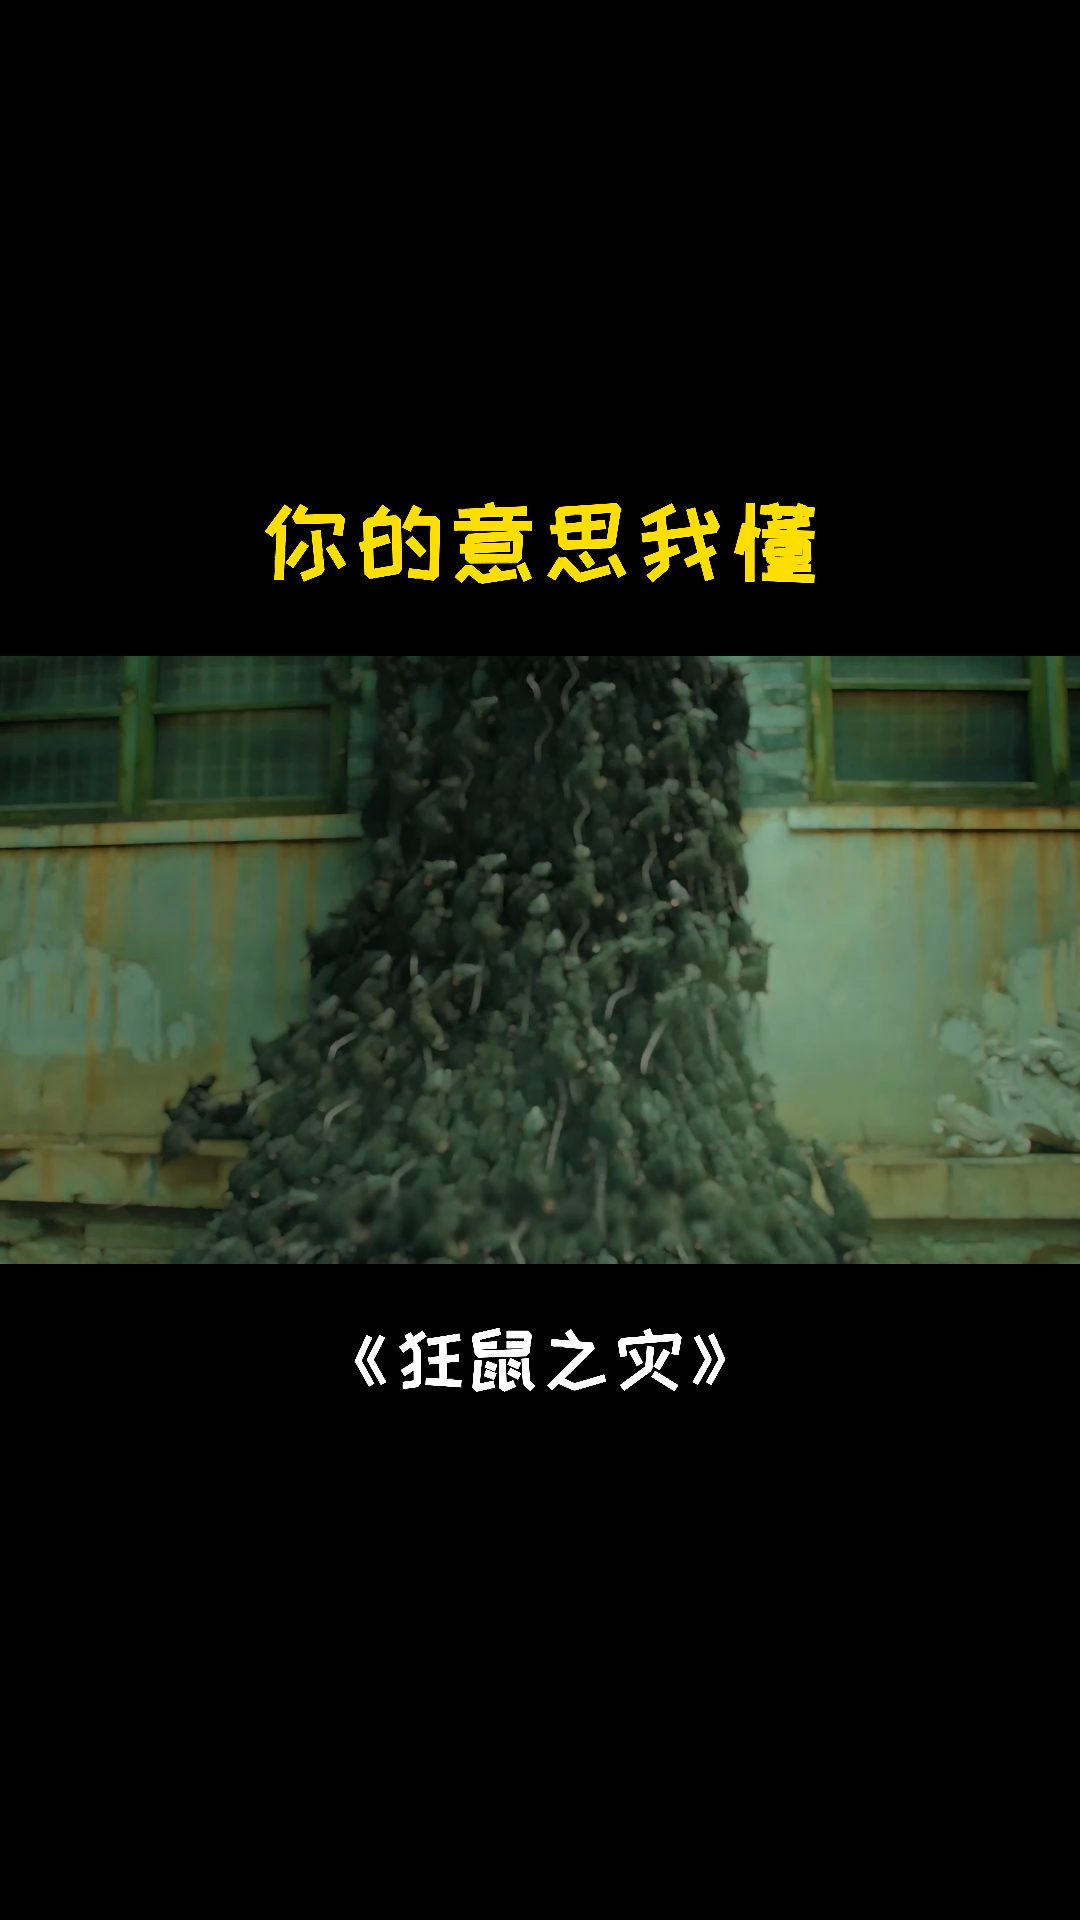 中国鼠灾电影图片